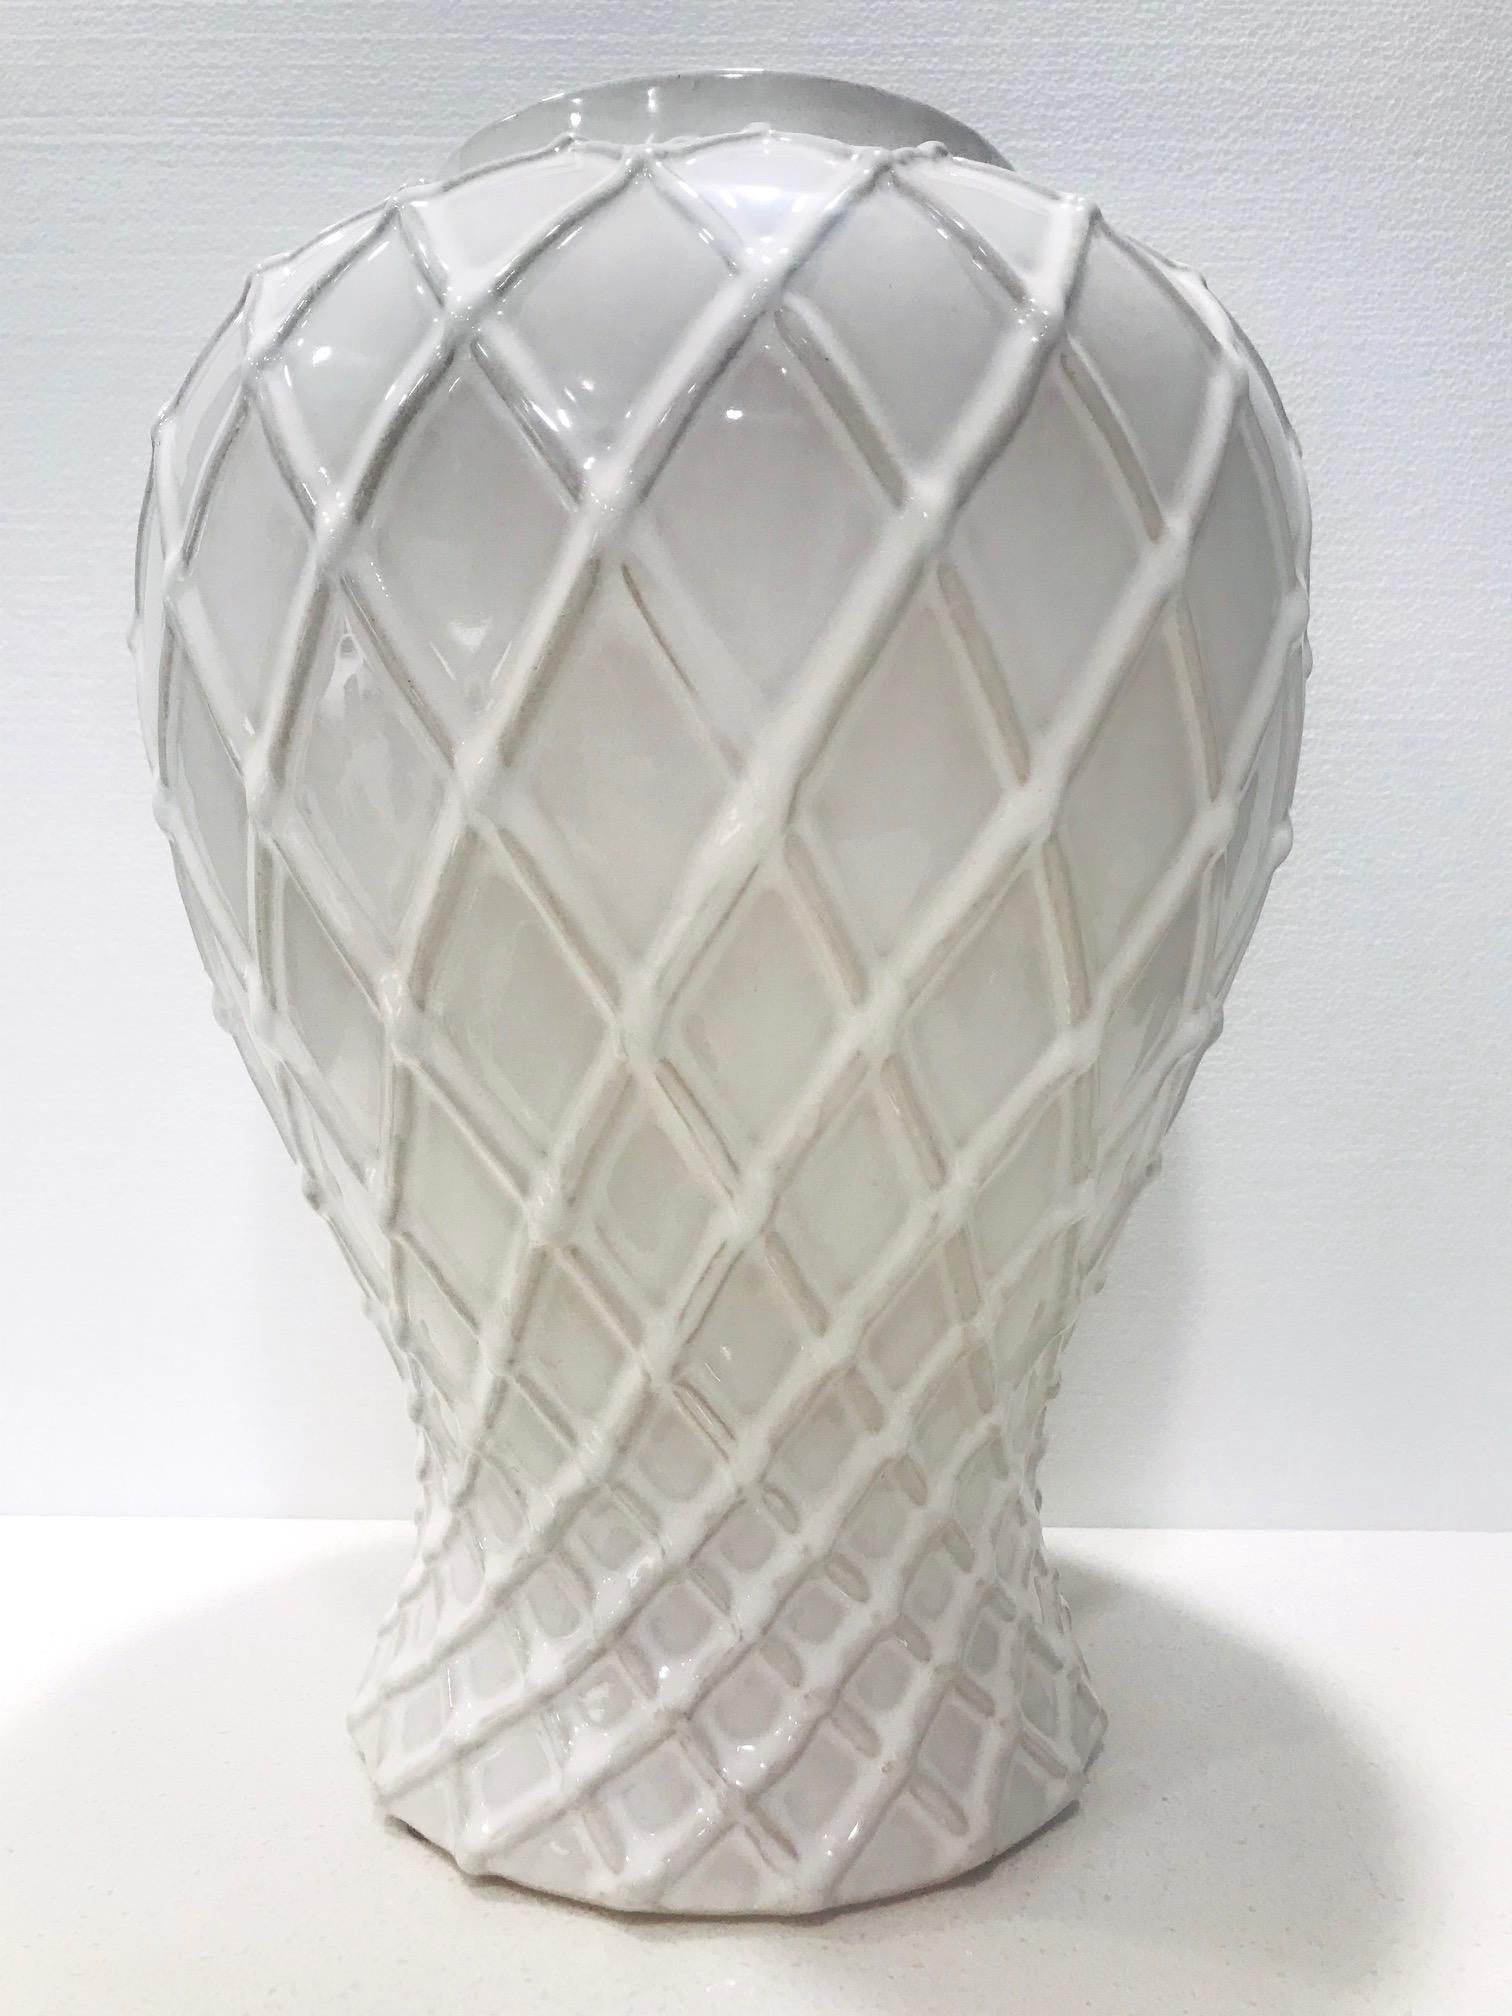 white lattice vase